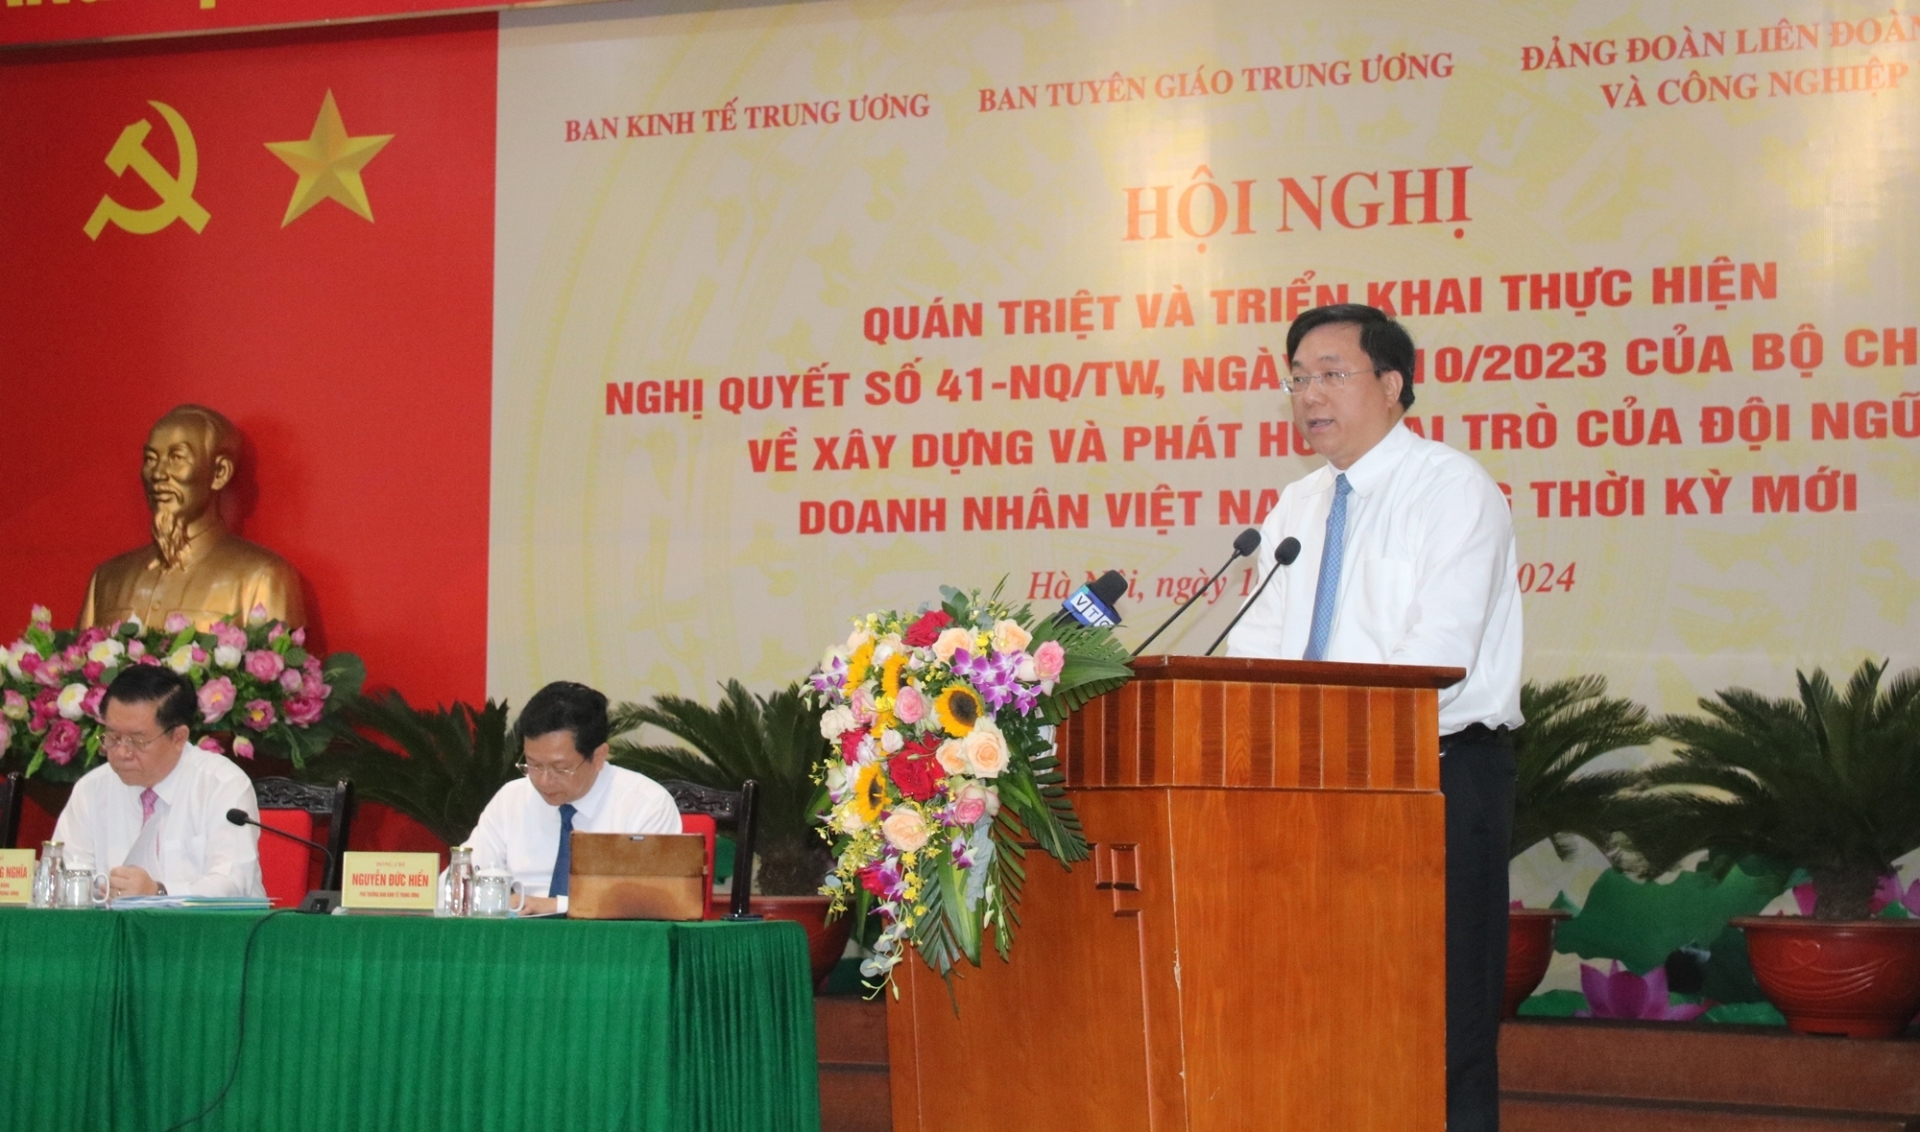 Đồng chí Trần Duy Đông, Thứ trưởng Bộ Kế hoạch và Đầu tư báo cáo Chương trình hành động của Chính phủ thực hiện Nghị quyết.